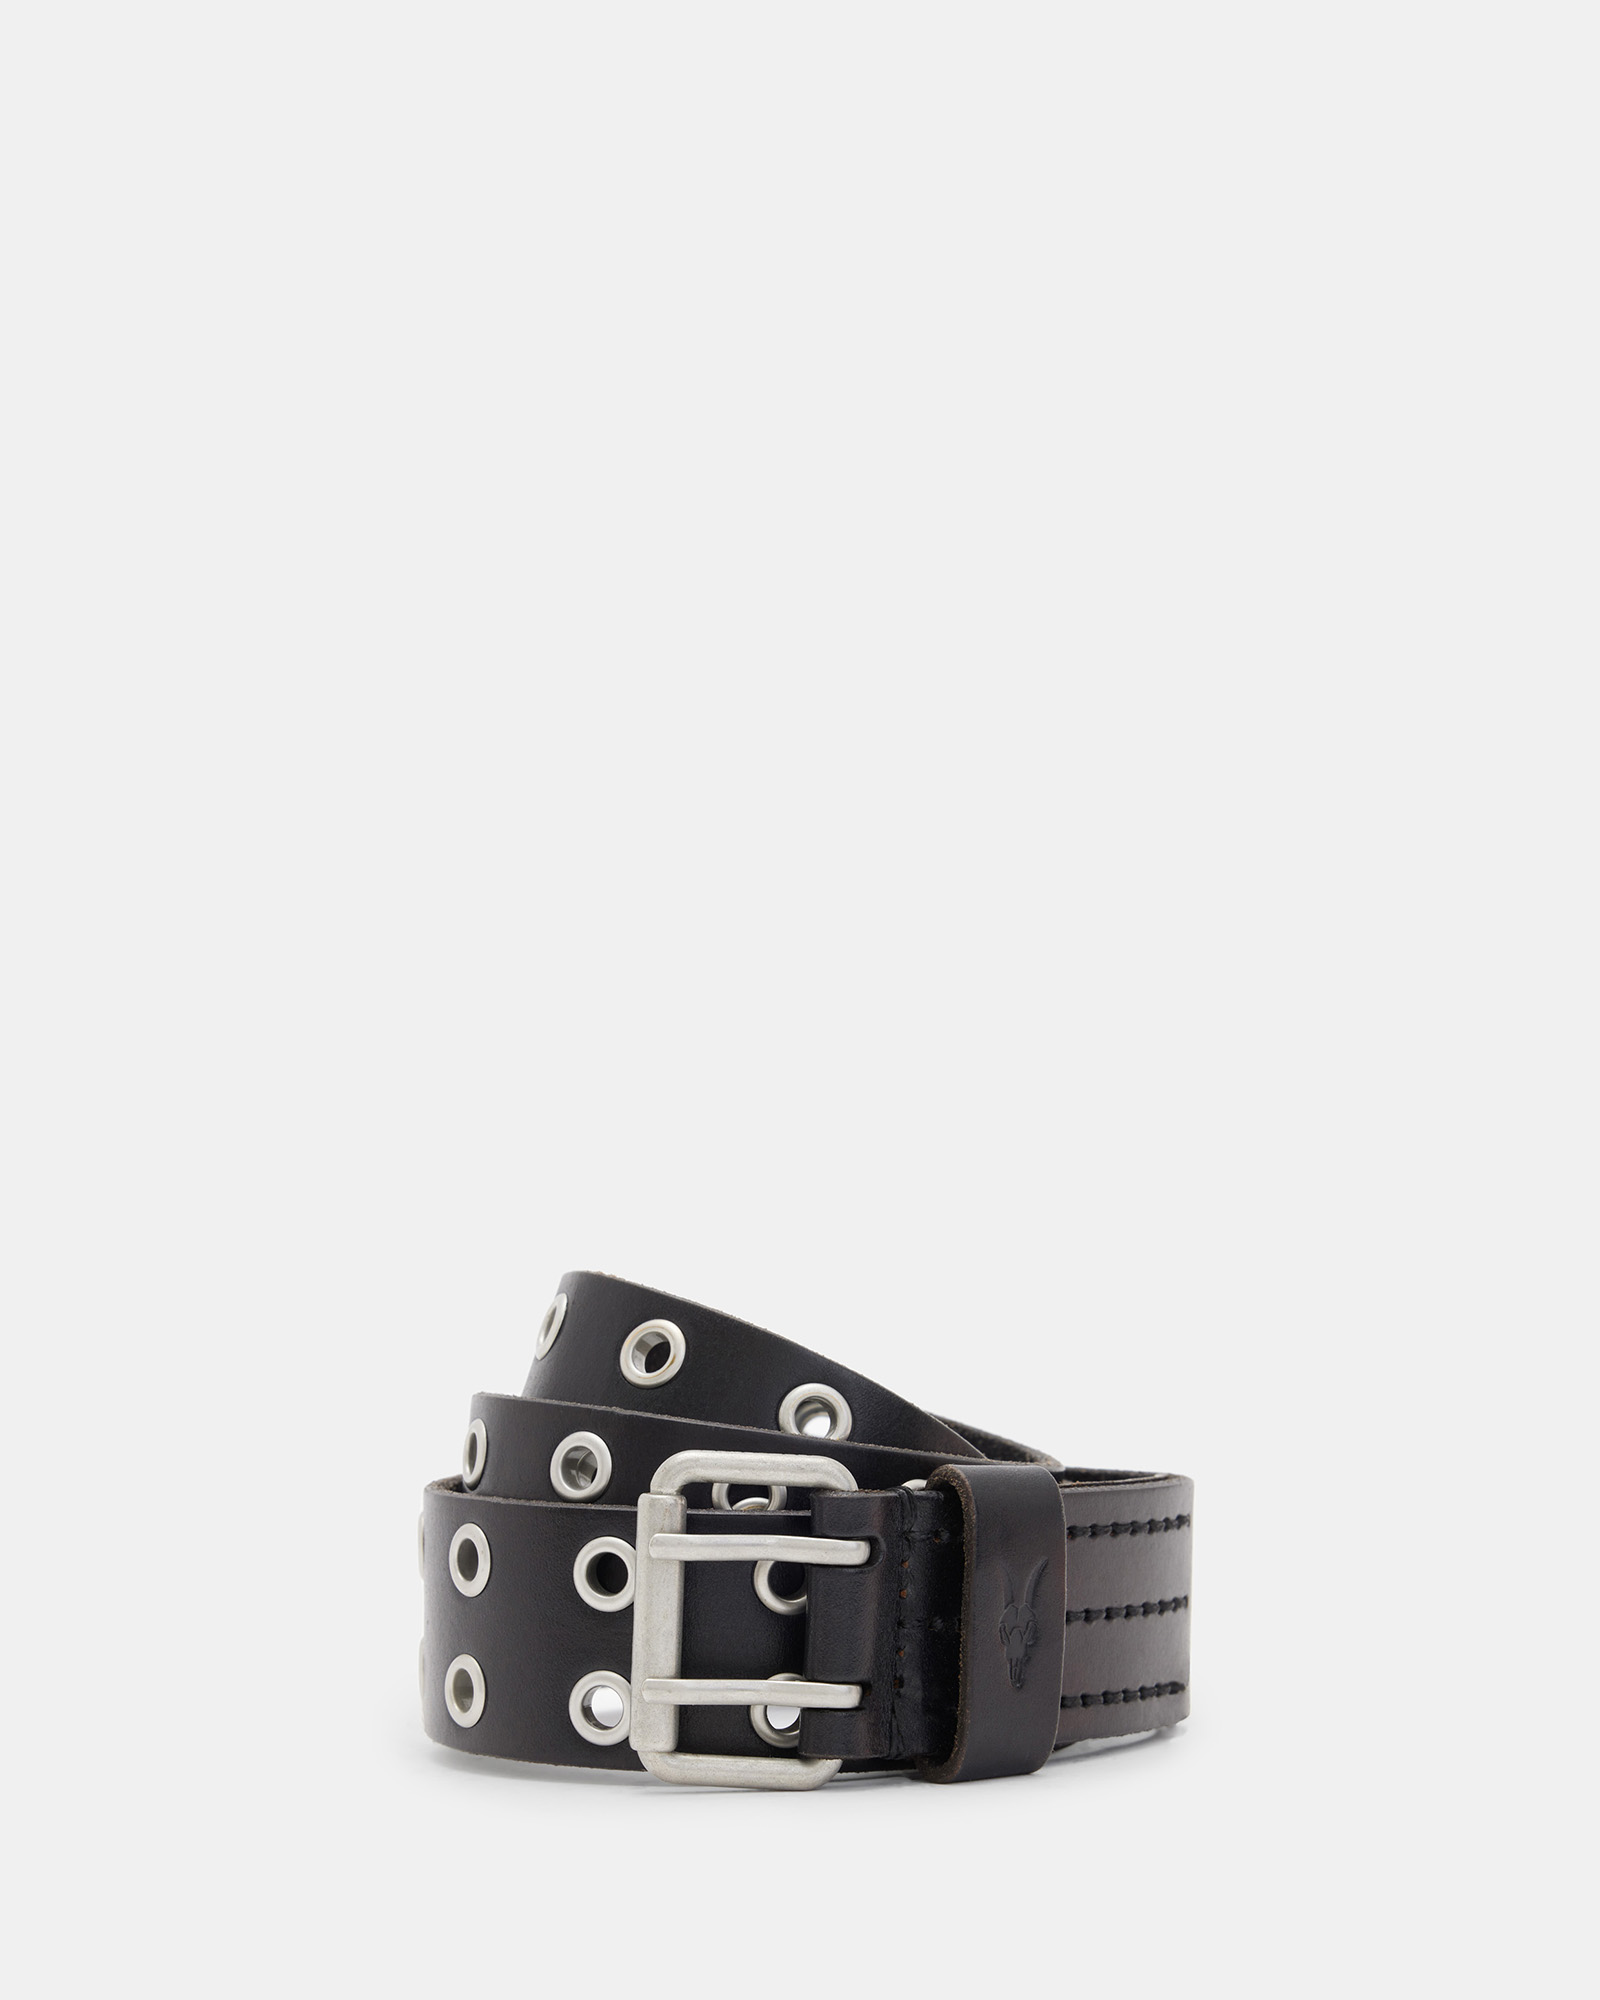 AllSaints Men's Cow Leather Sturge Belt, Black, Size: 32